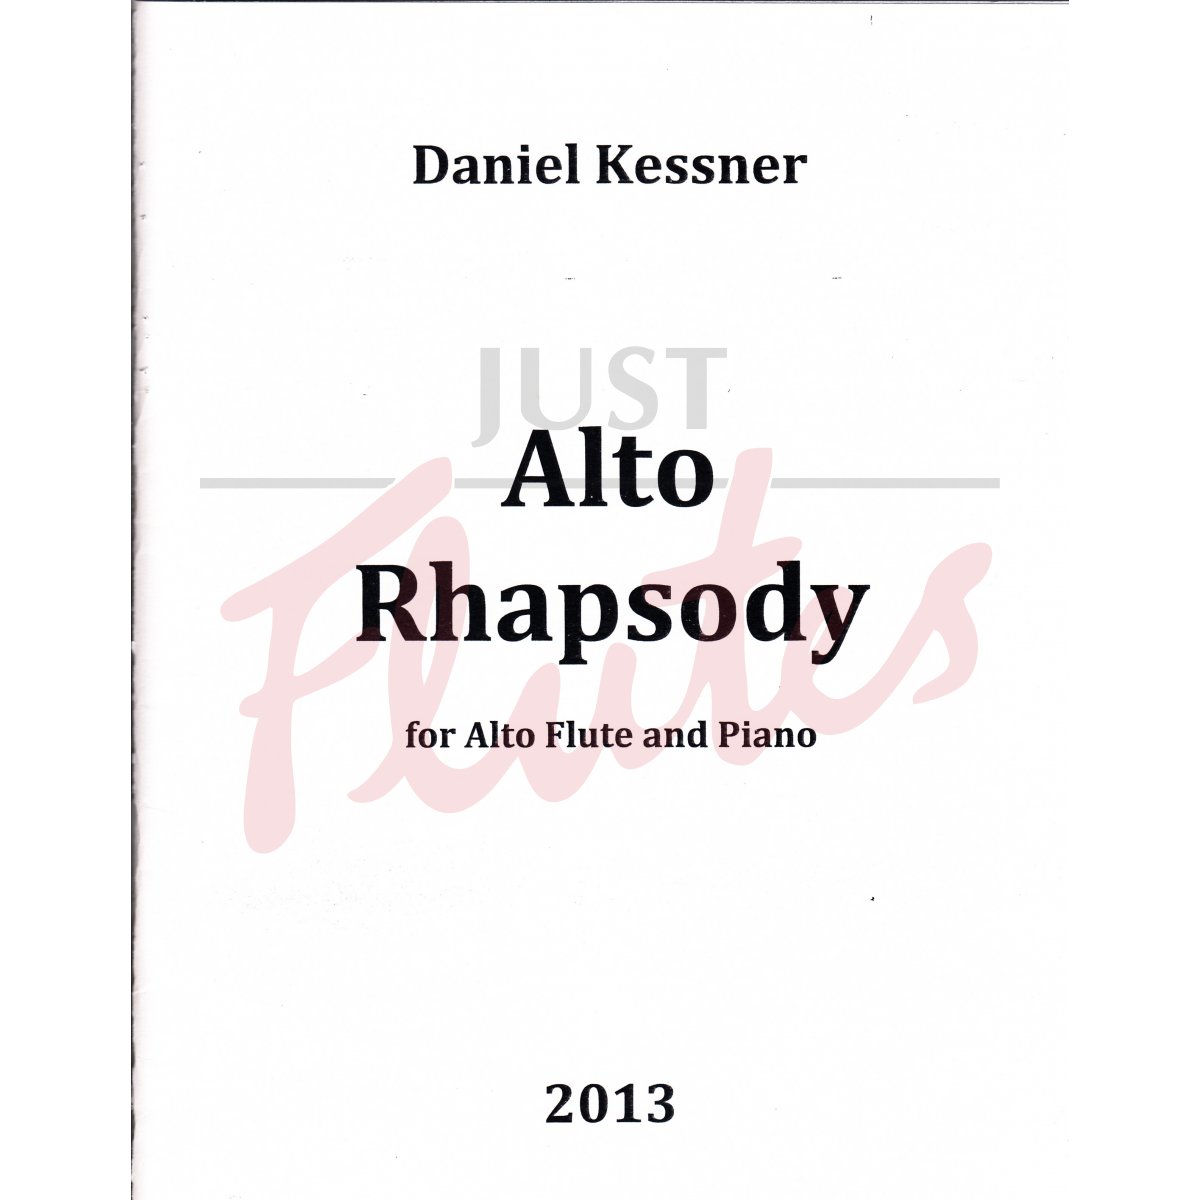 Alto Rhapsody for Alto Flute and Piano